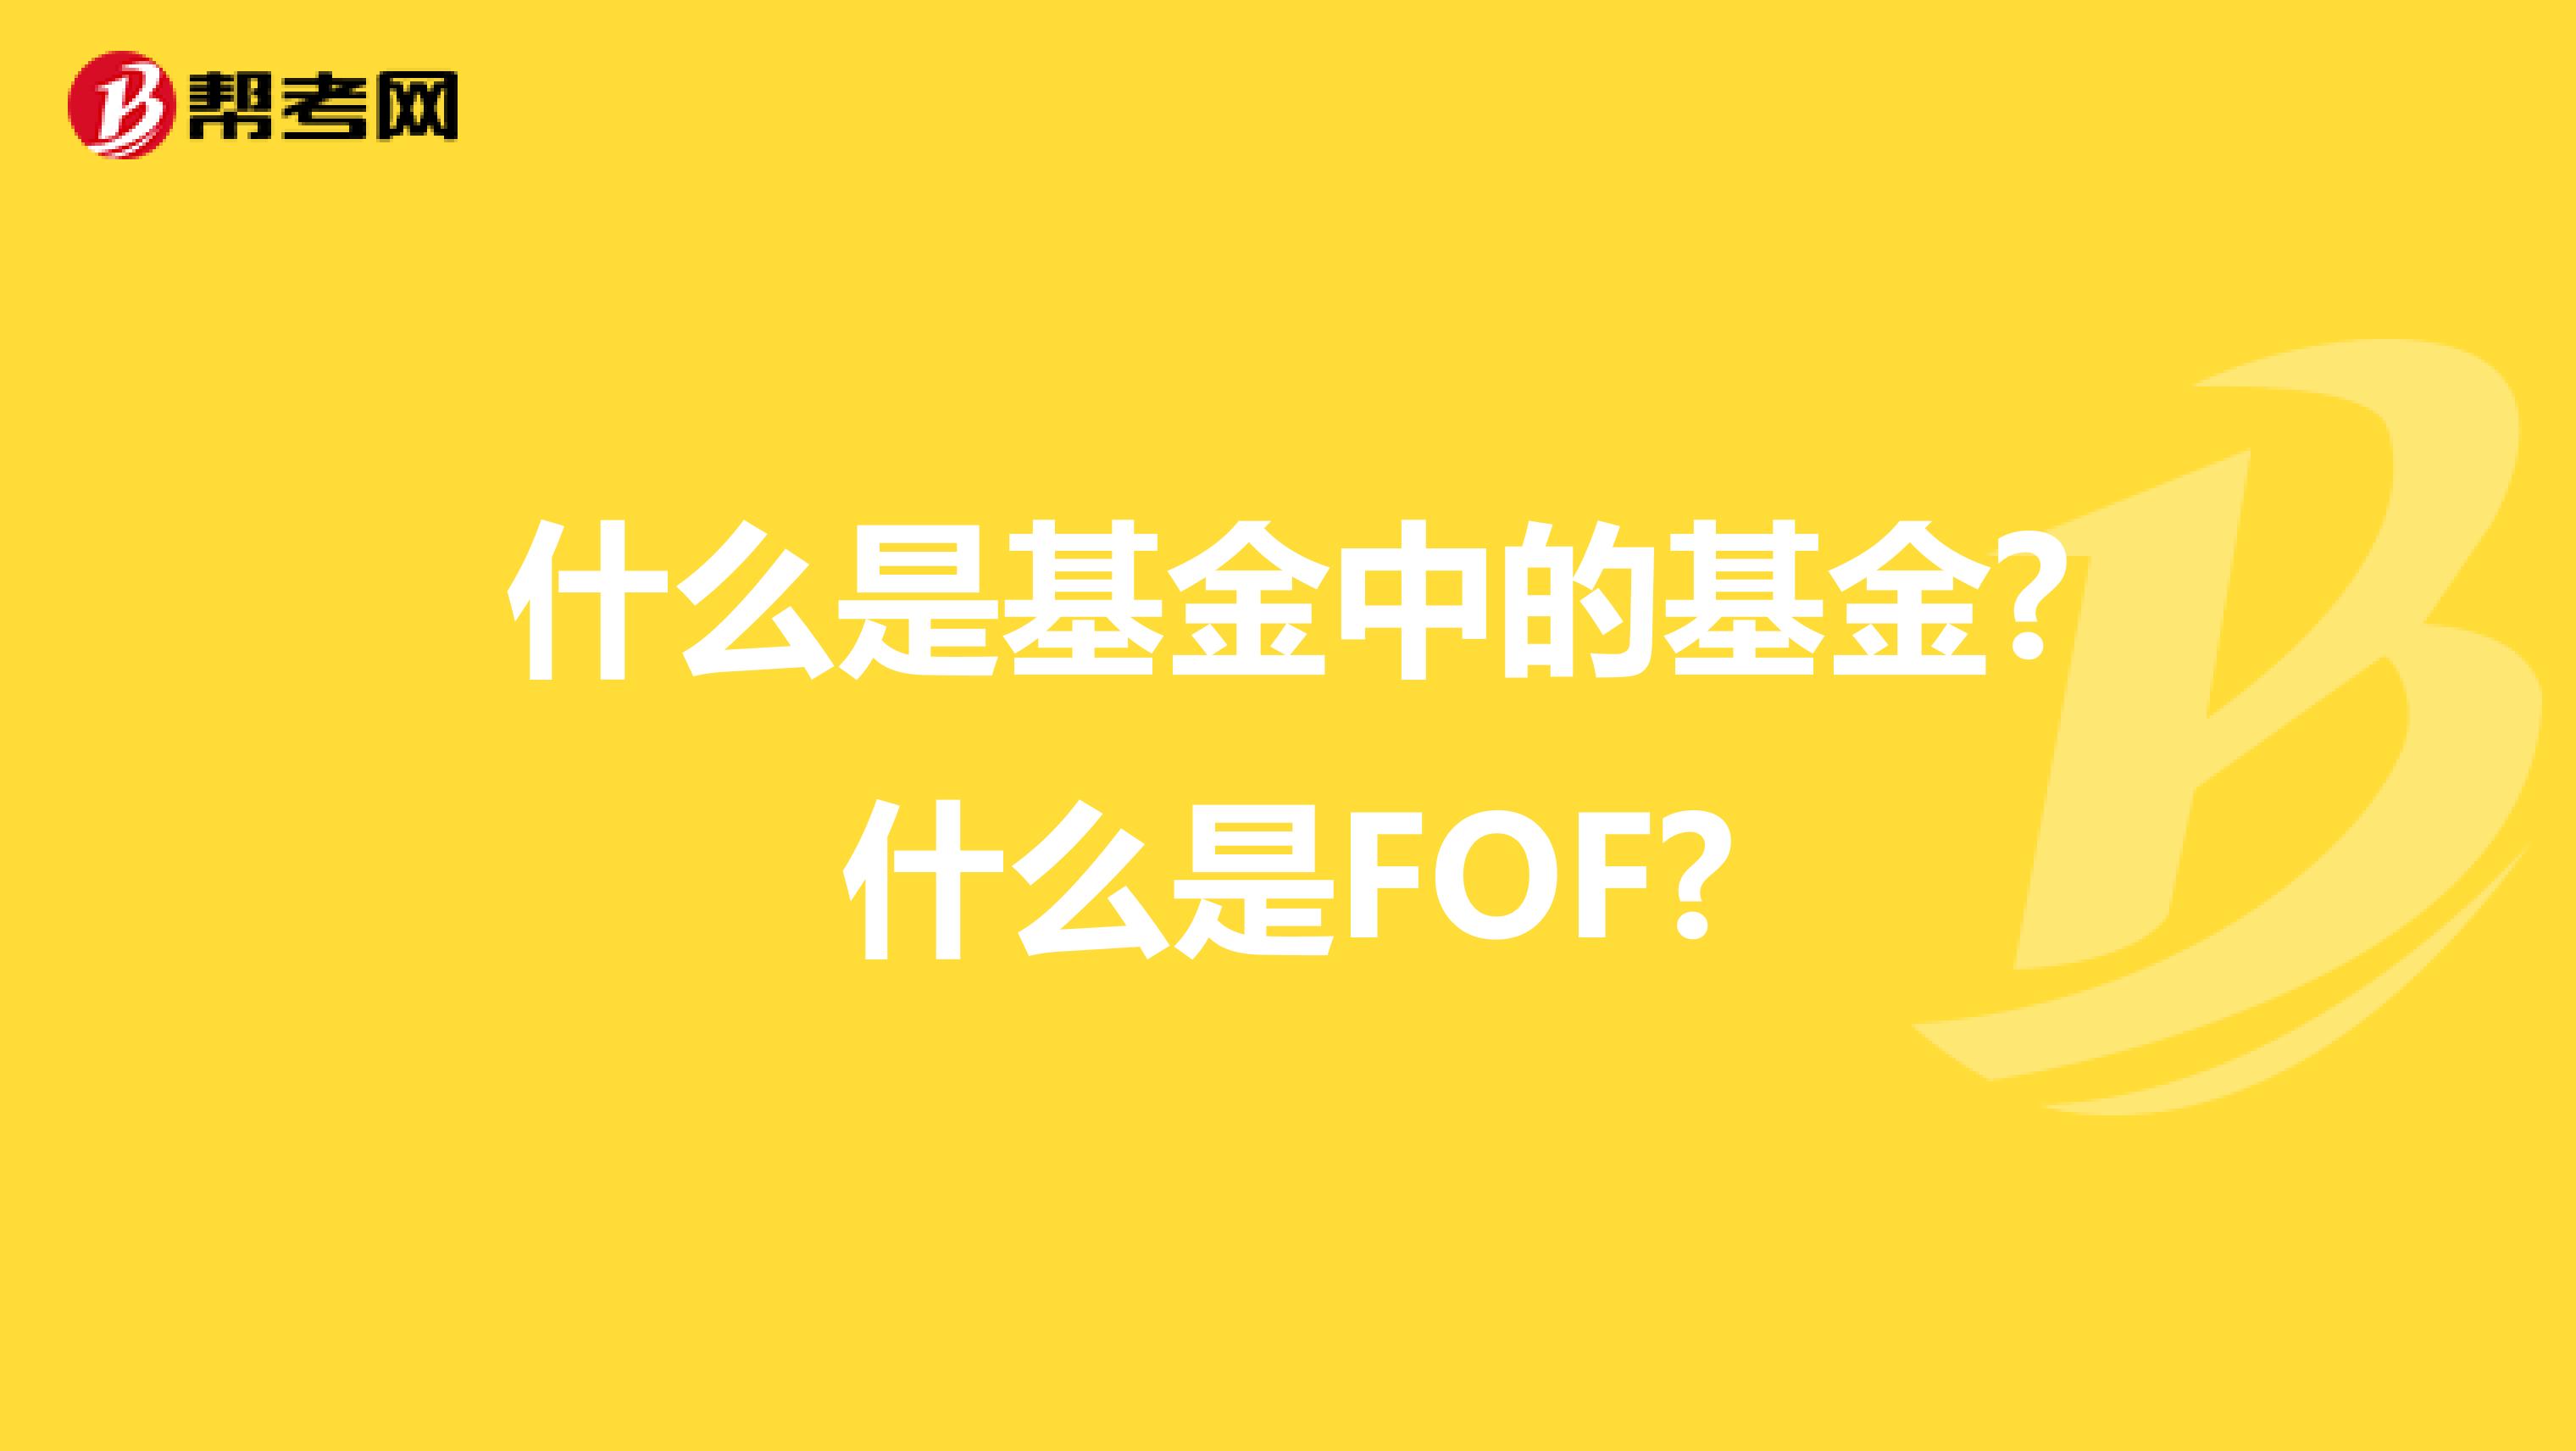 什么是基金中的基金?什么是FOF?